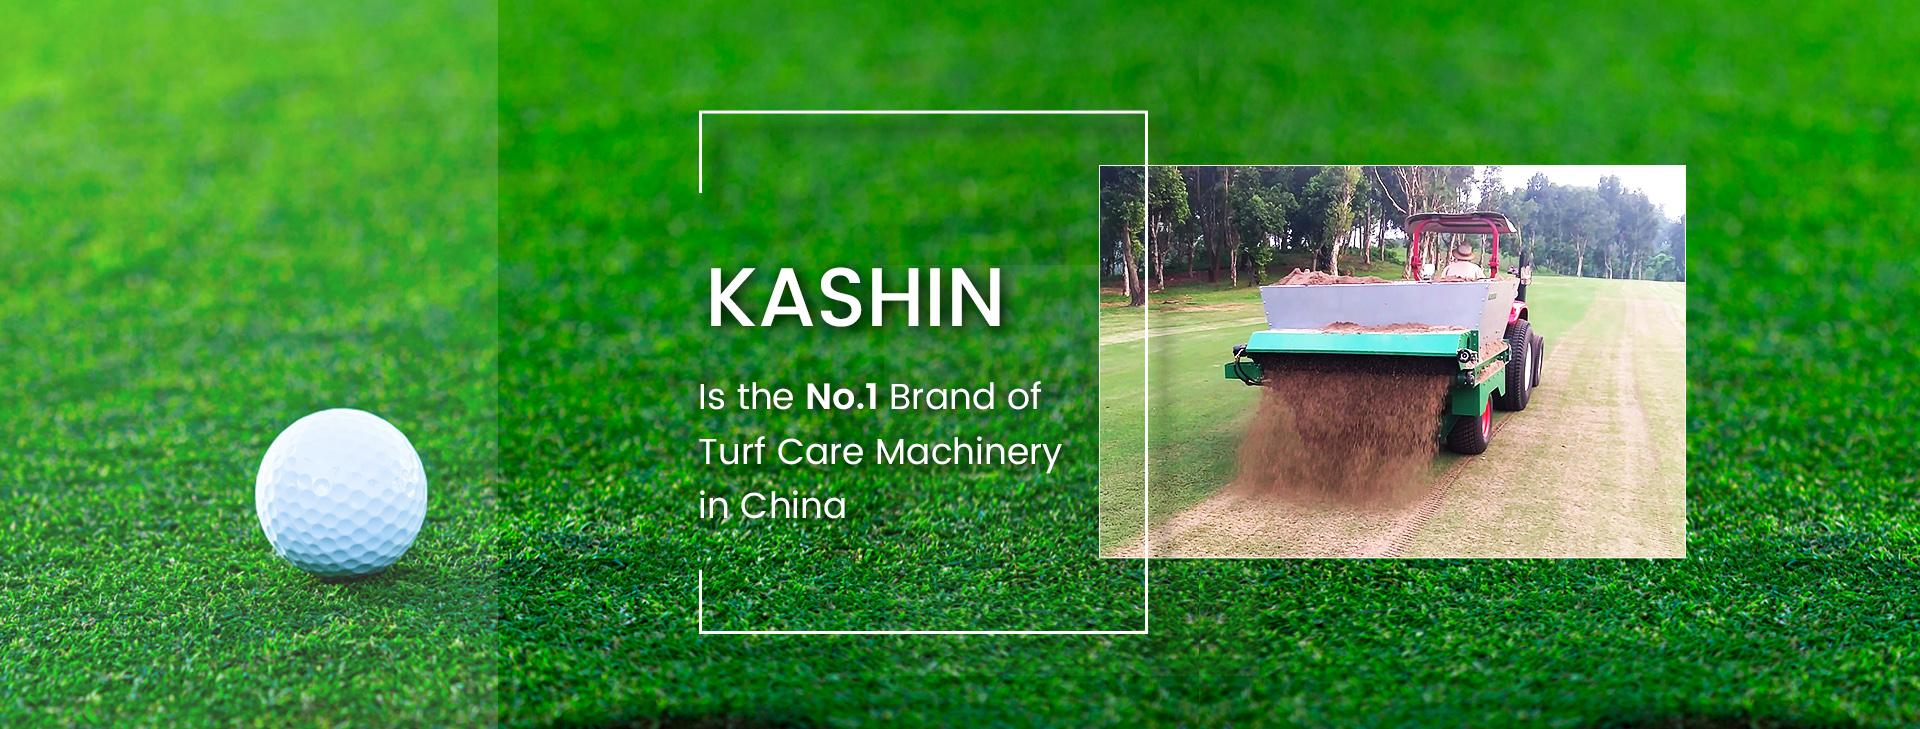 K ASHIN – торговая марка №1 по производству машин для ухода за газоном в Китае